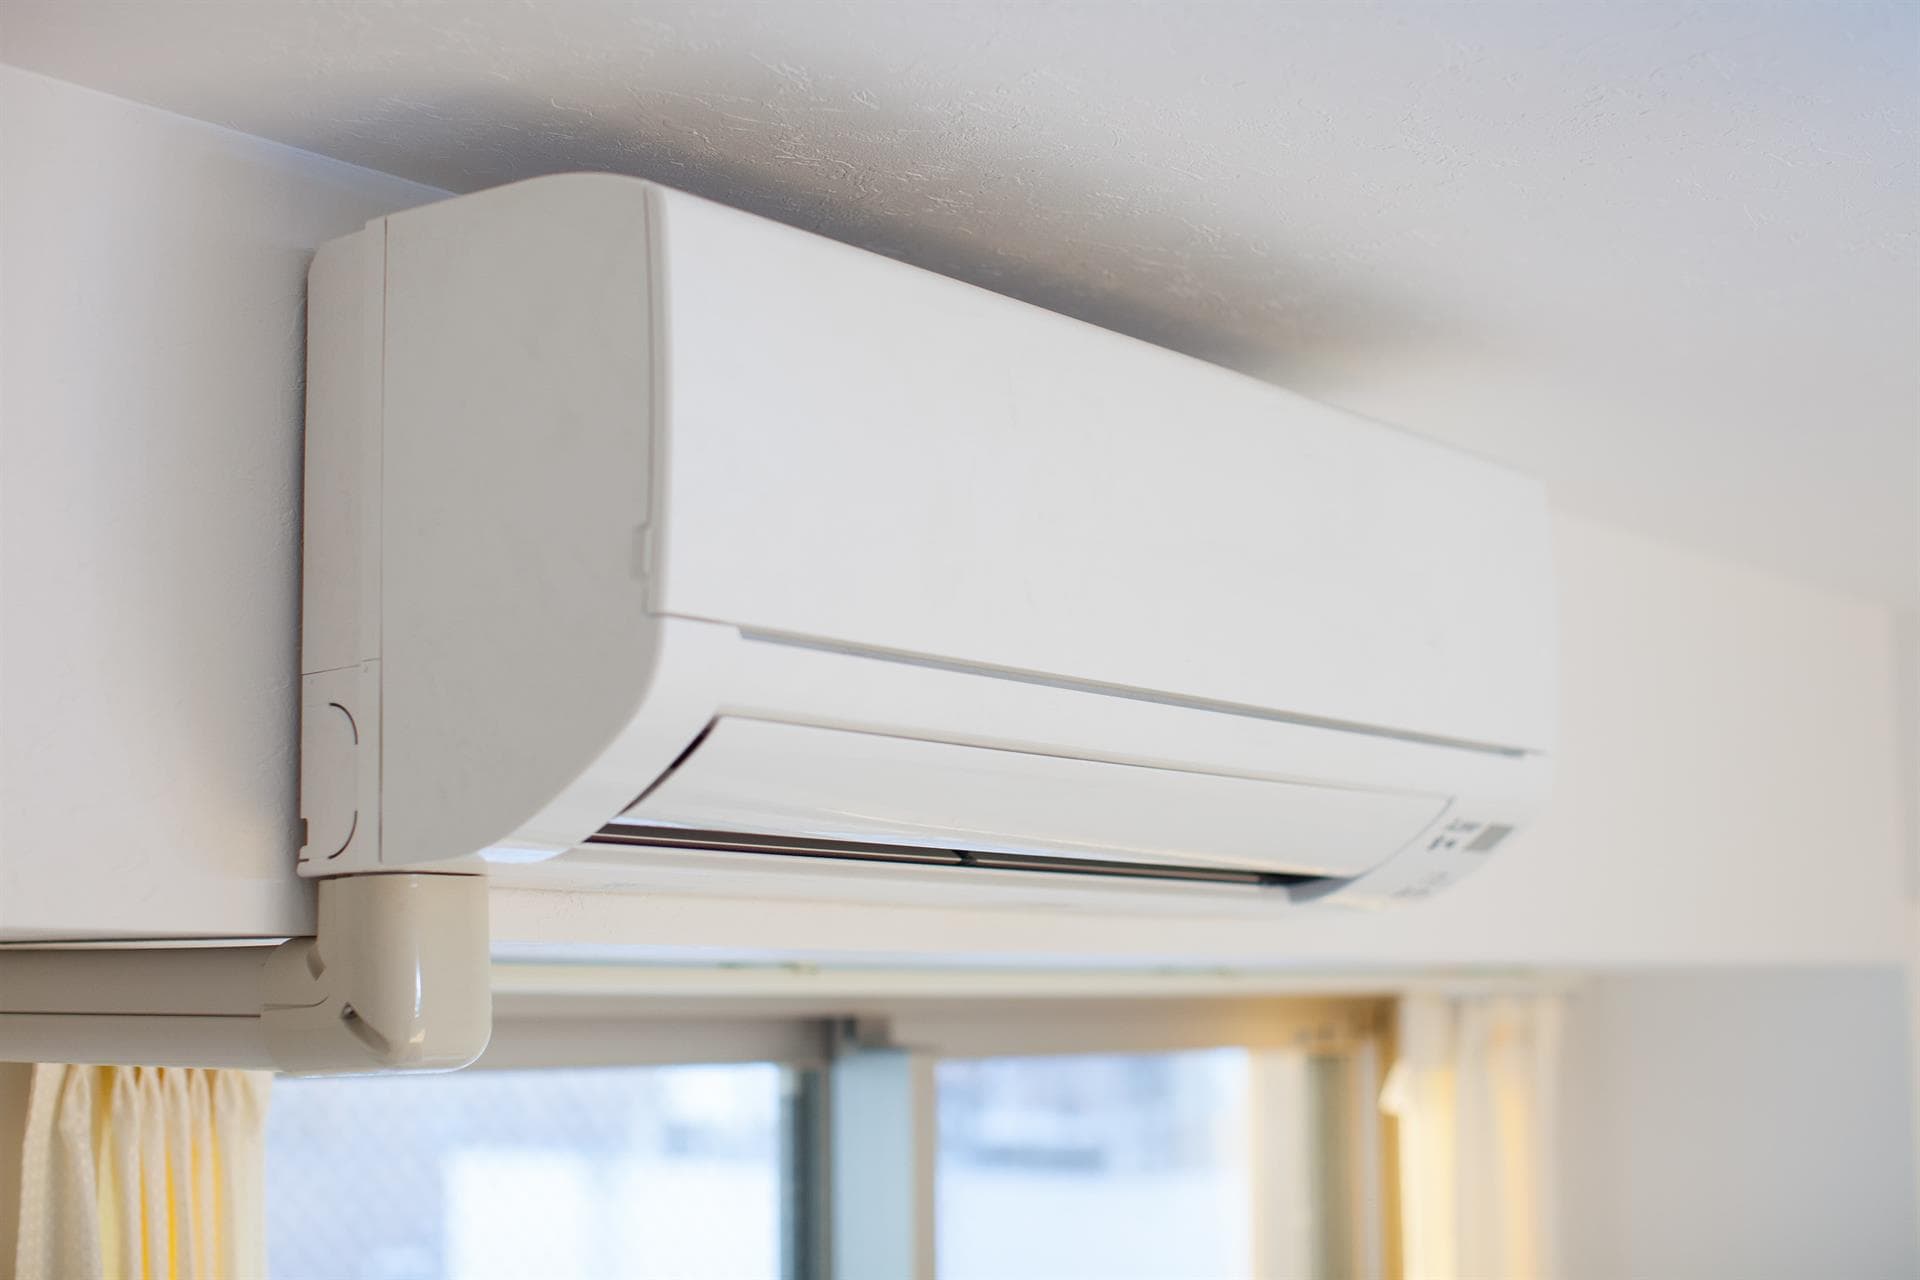 Instalación y mantenimiento de sistemas de climatización y tratamiento del aire